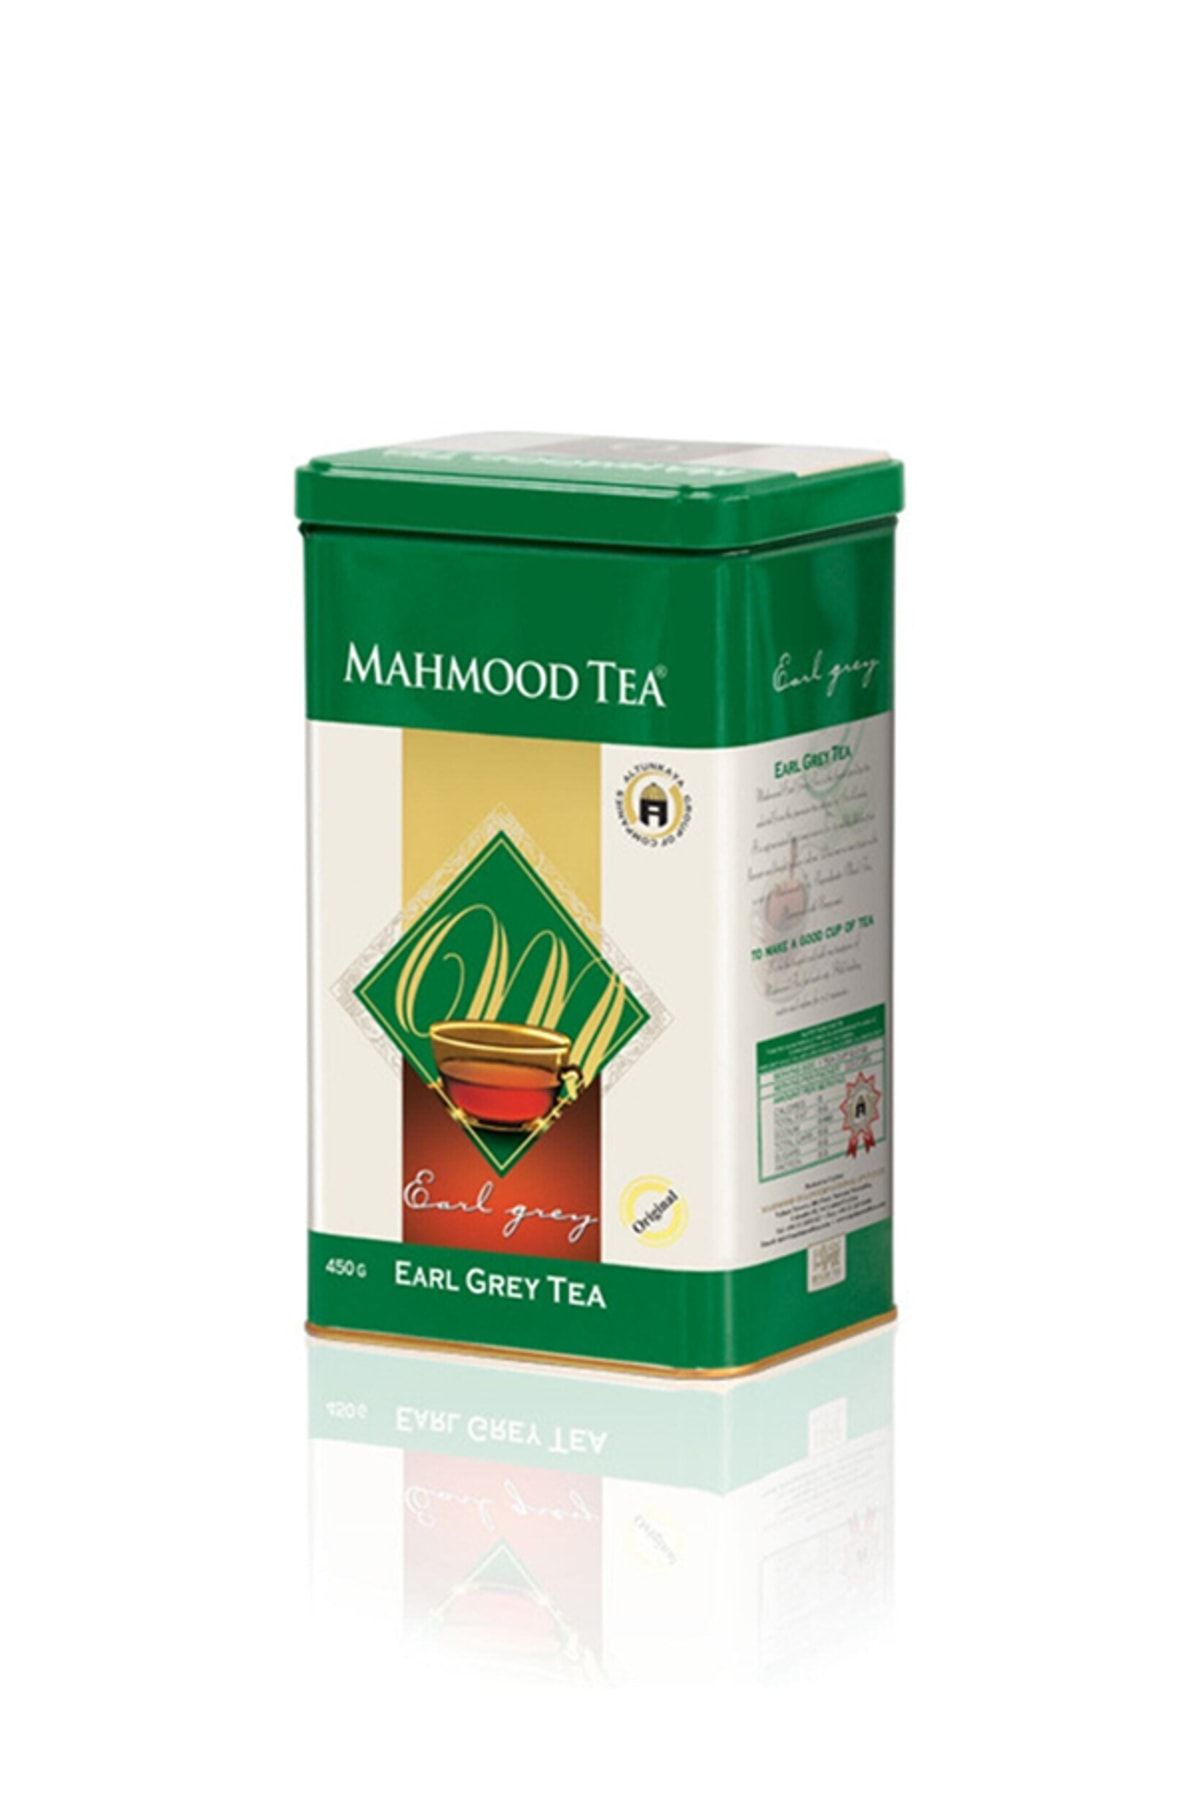 Mahmood Tea Bergamotlu Ithal Seylan Dökme Çayı Ceylon Earl Grey Teneke Kutu 450 gr